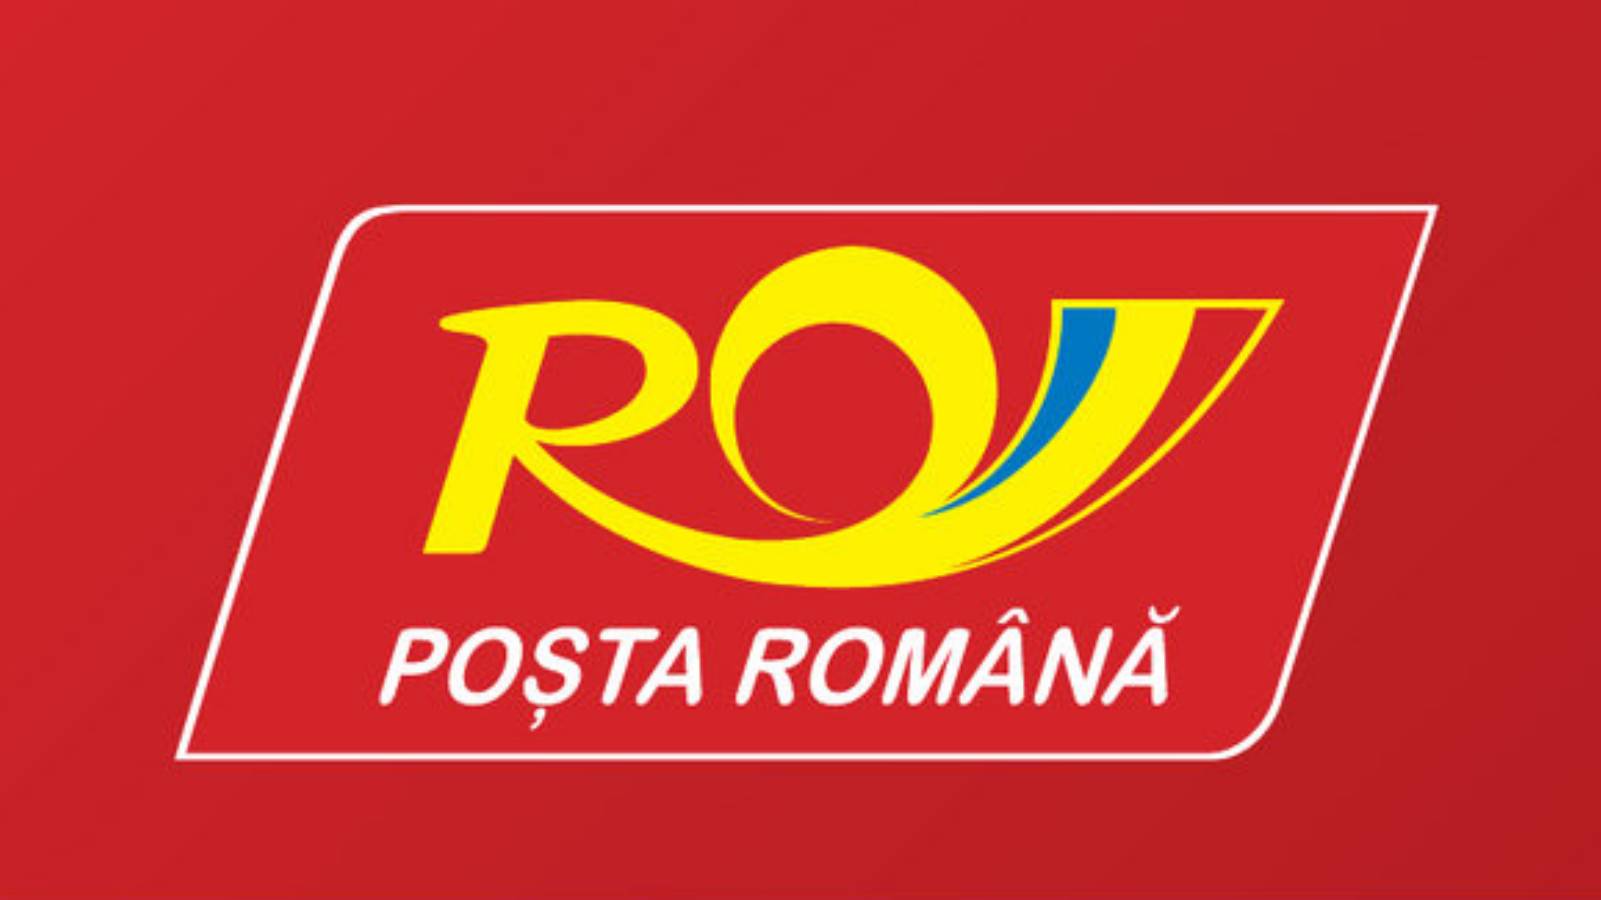 Poczta Rumuńska Jak obliczyć cenę przesyłki przez Europę